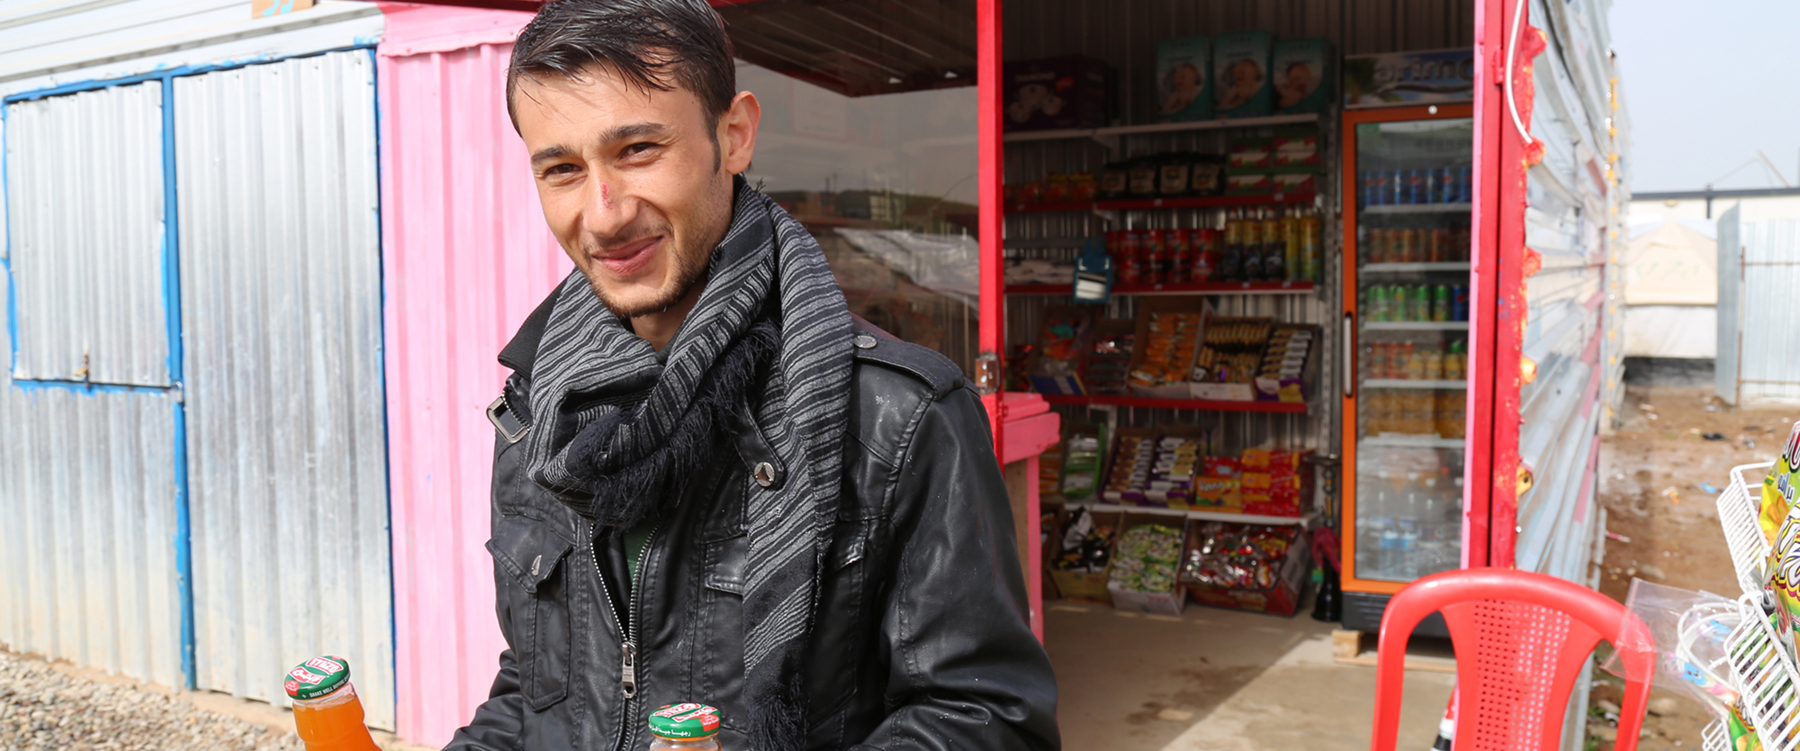 Syrische vluchteling voor zijn winkel in het Gawer Gosik-kamp, Turkije. | Foto: Taryn Fivek | IOM 2015